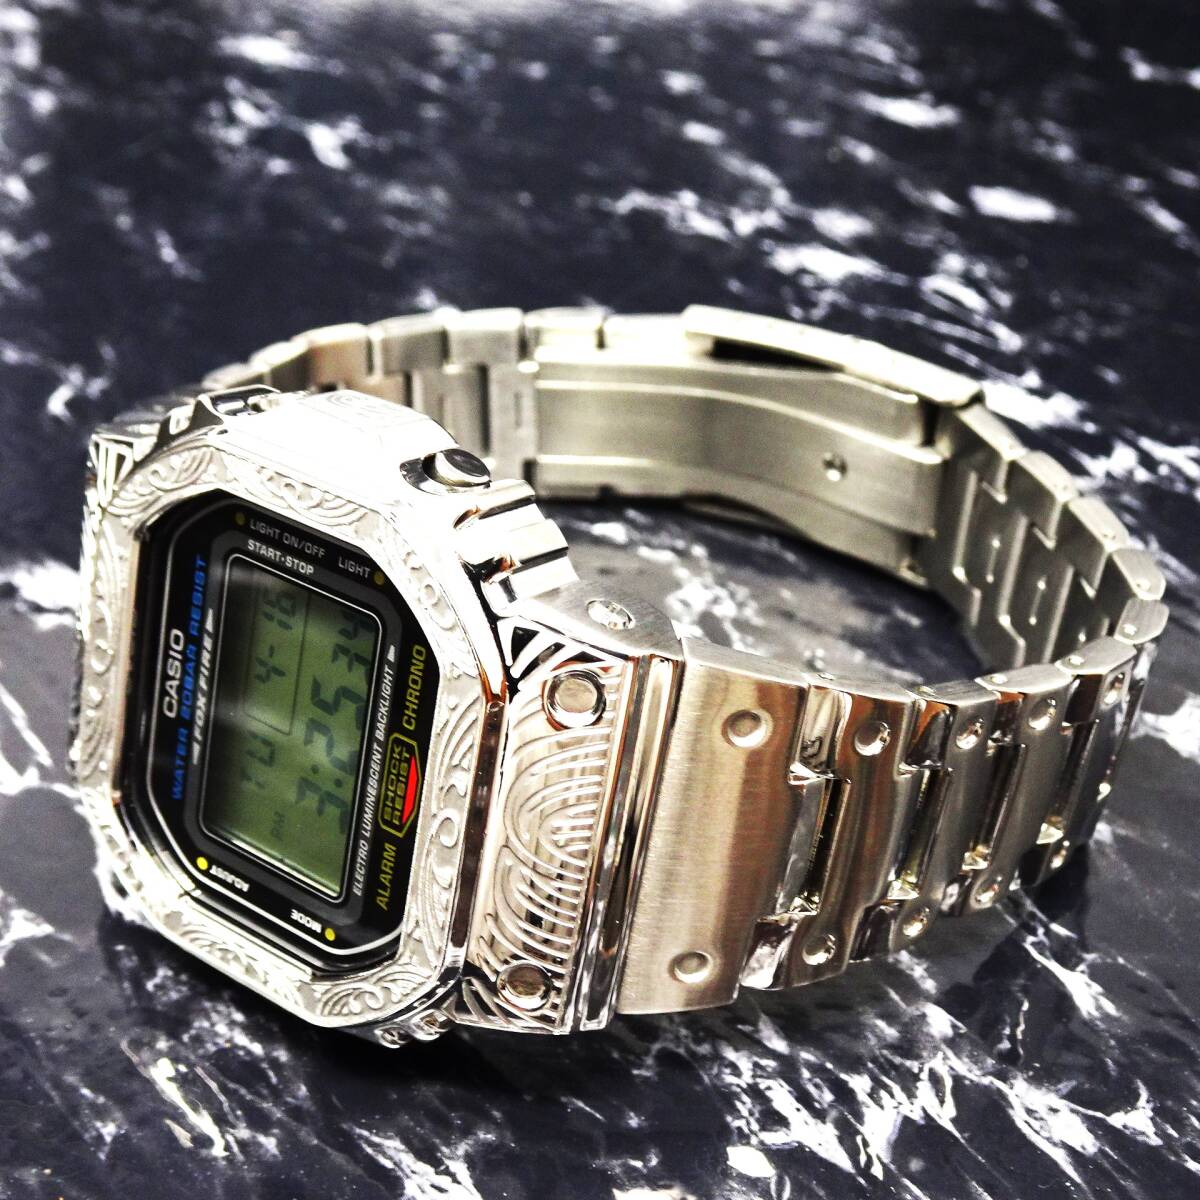 〓送料無料〓新品〓Gショックカスタム本体付きDW5600デジタル腕時計ステンレス製ベネチアン柄エンボス加工ベゼル・フルメタルモデル